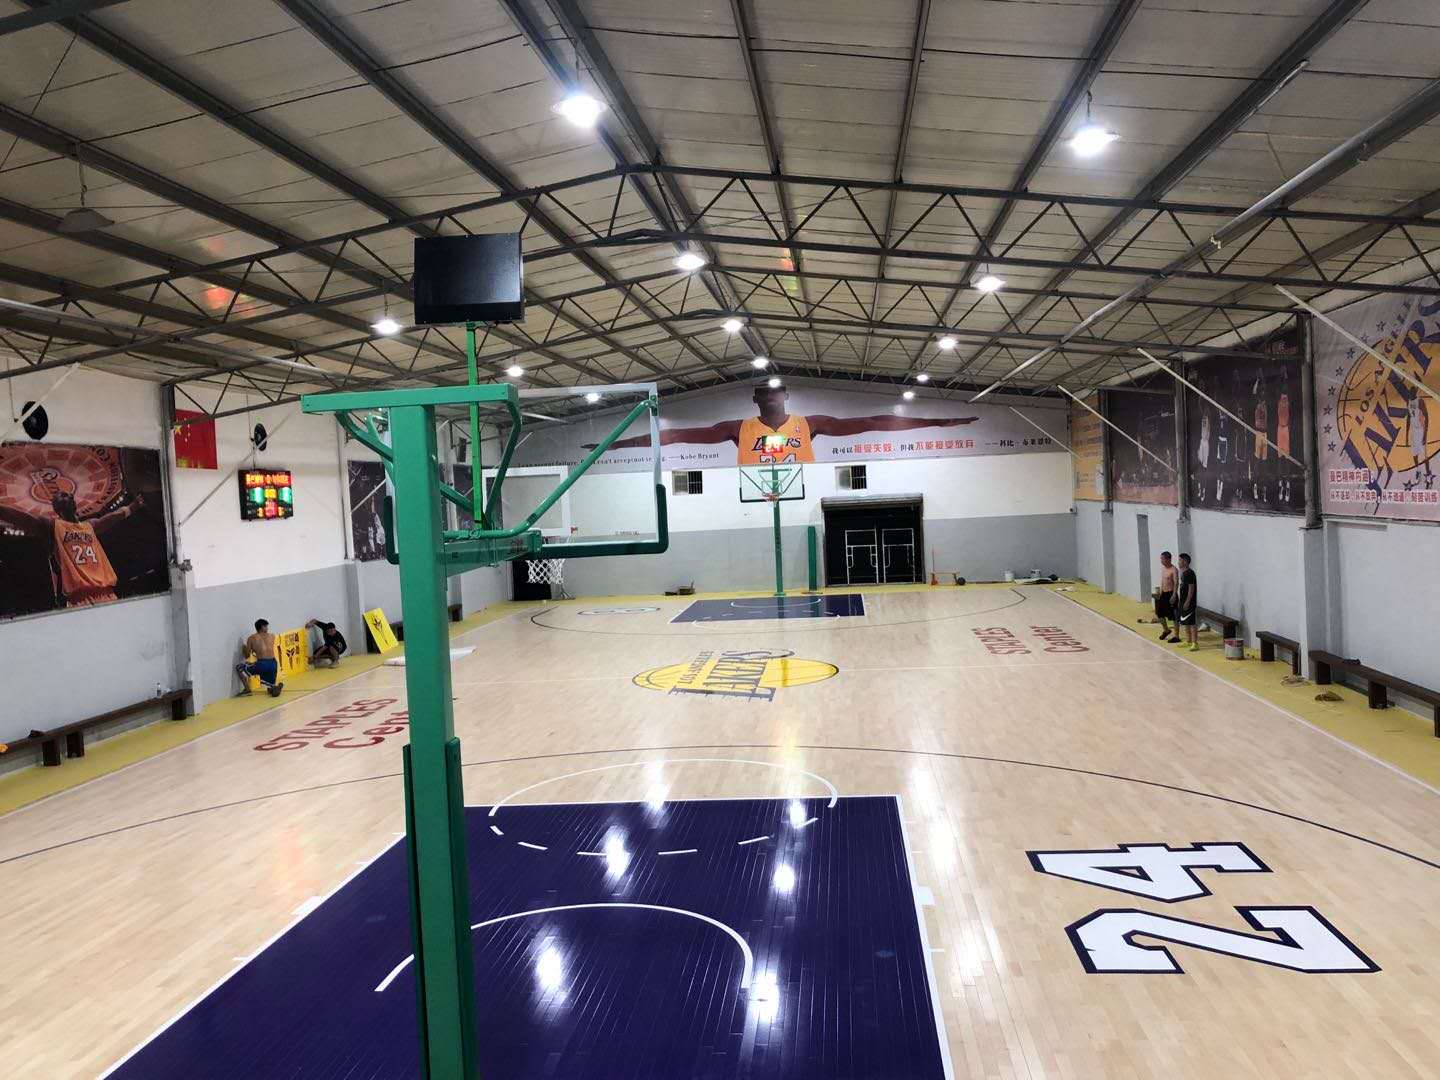 篮球馆设计 篮球馆运动木地板  羽毛球馆木地板双层龙骨体育木地板